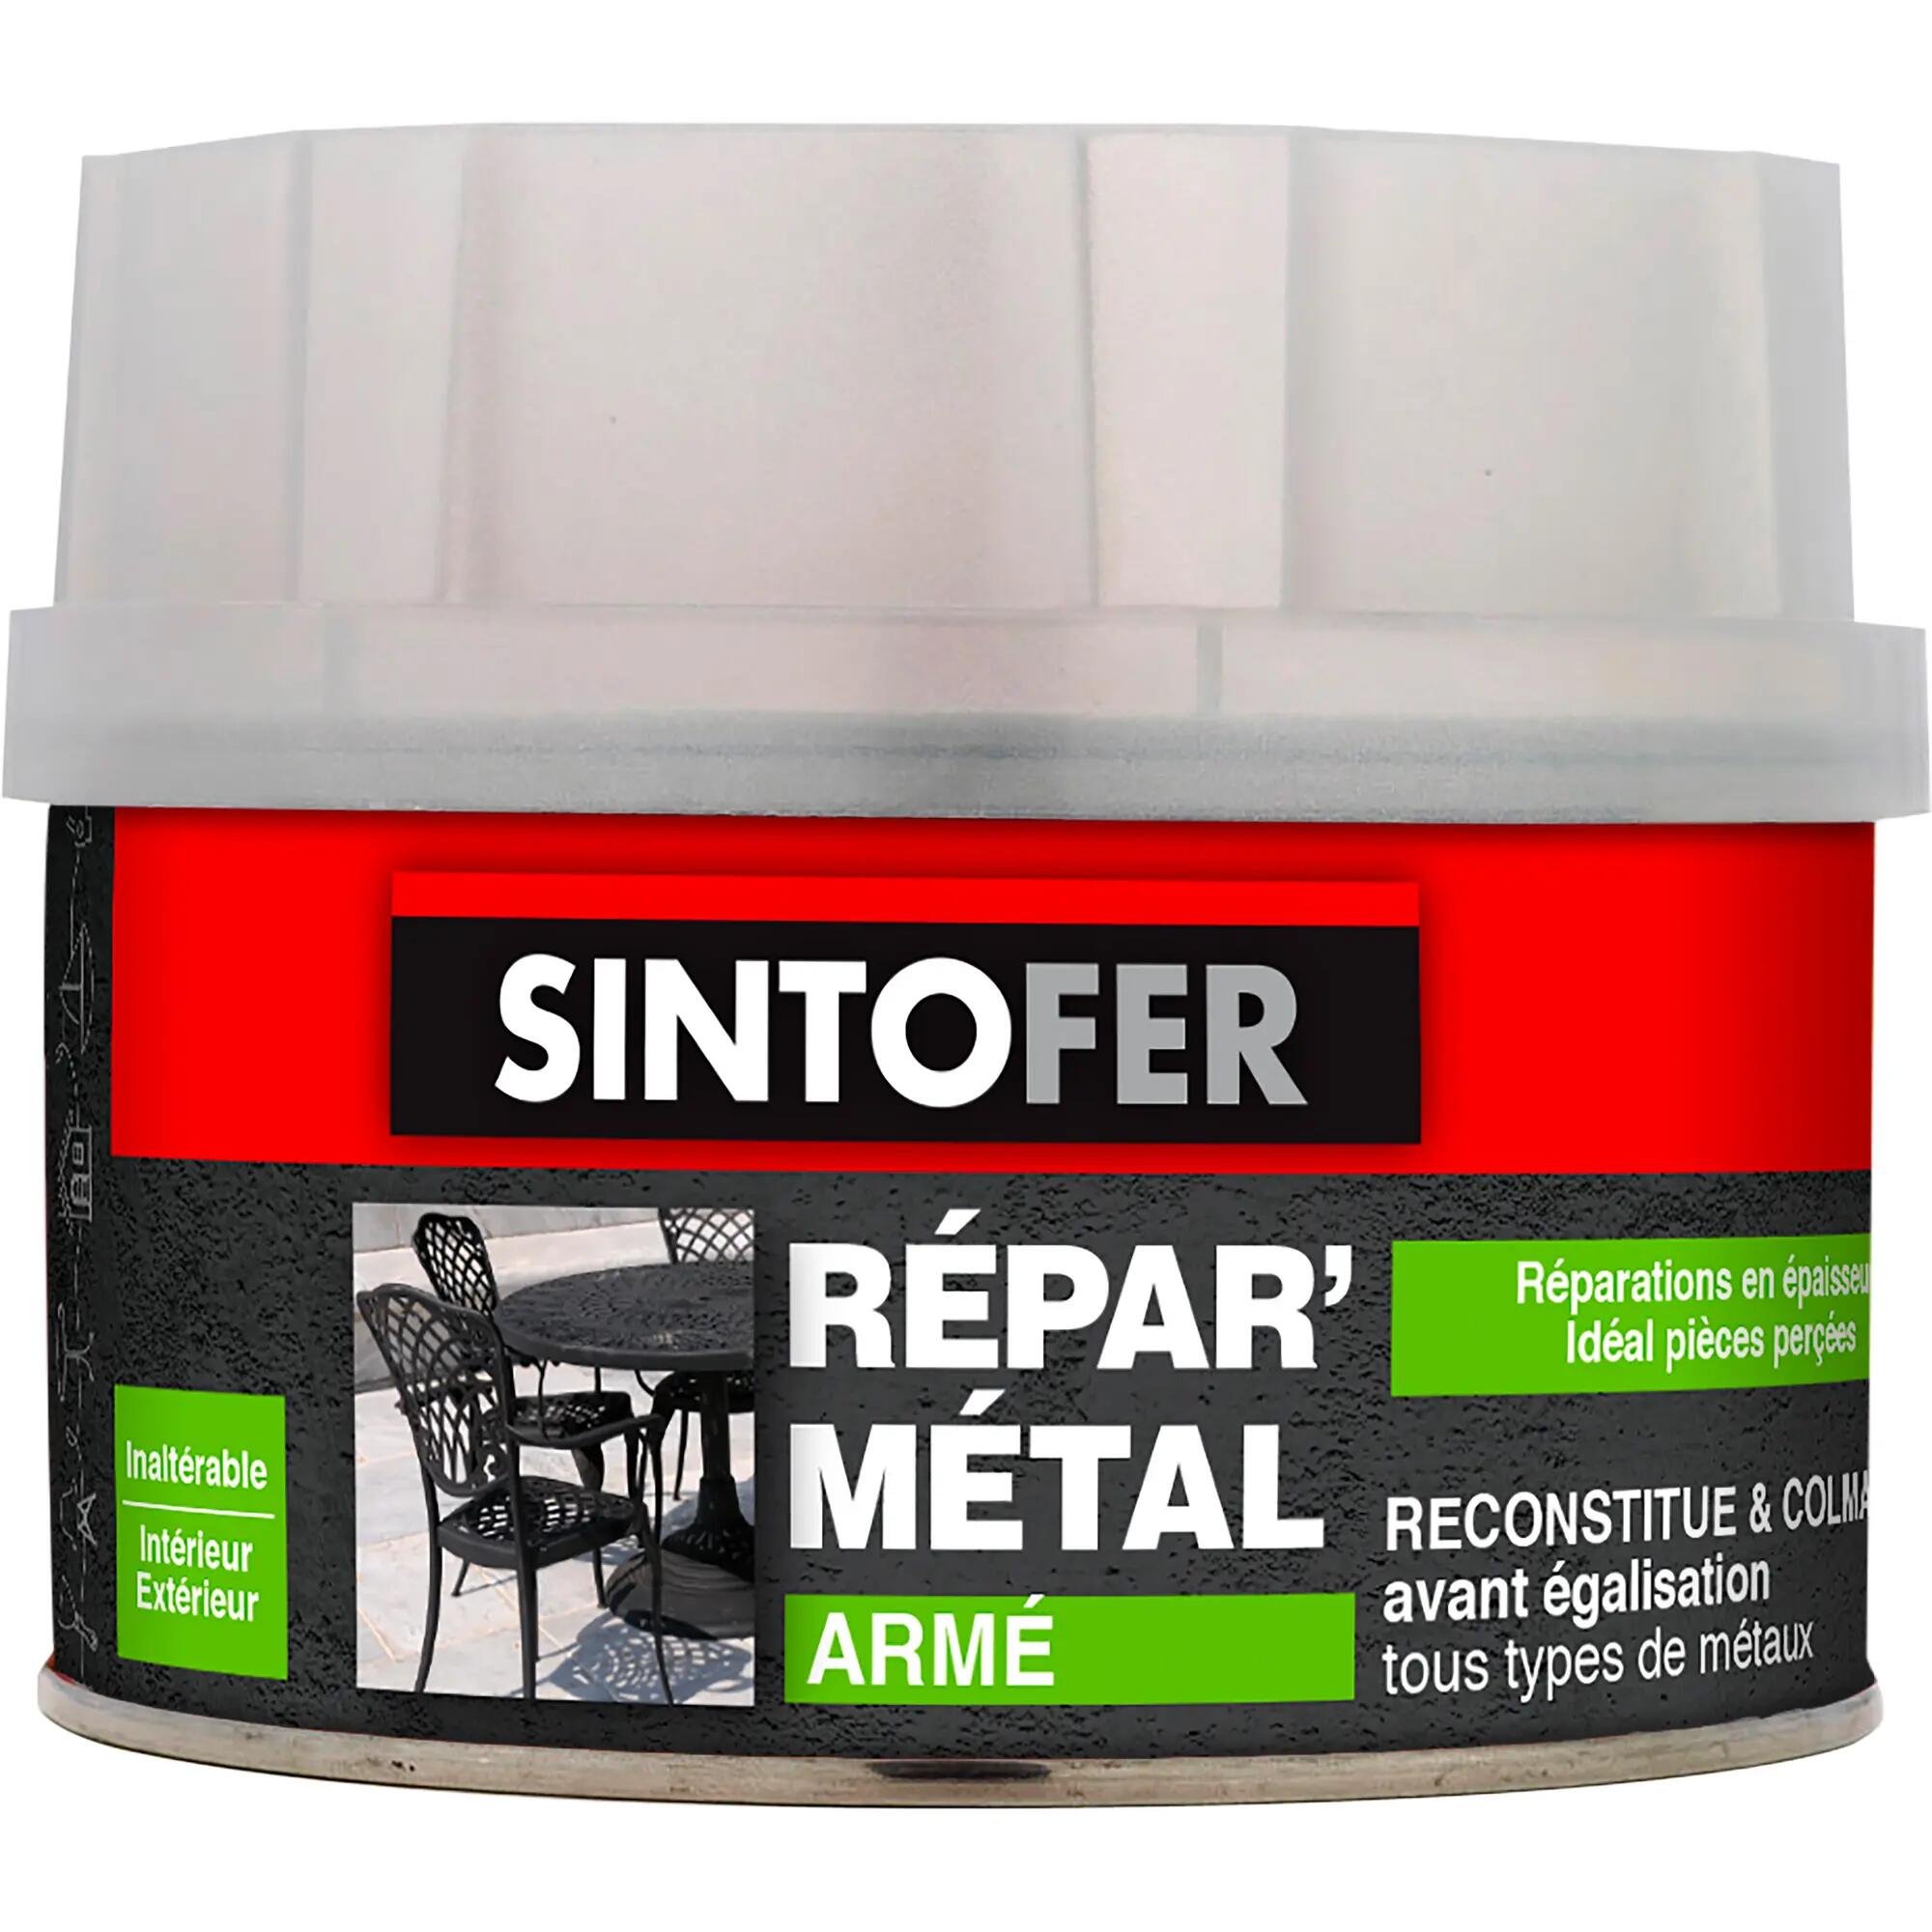 Colle réparation Sintofer, répare métal armé SINTO, 190G